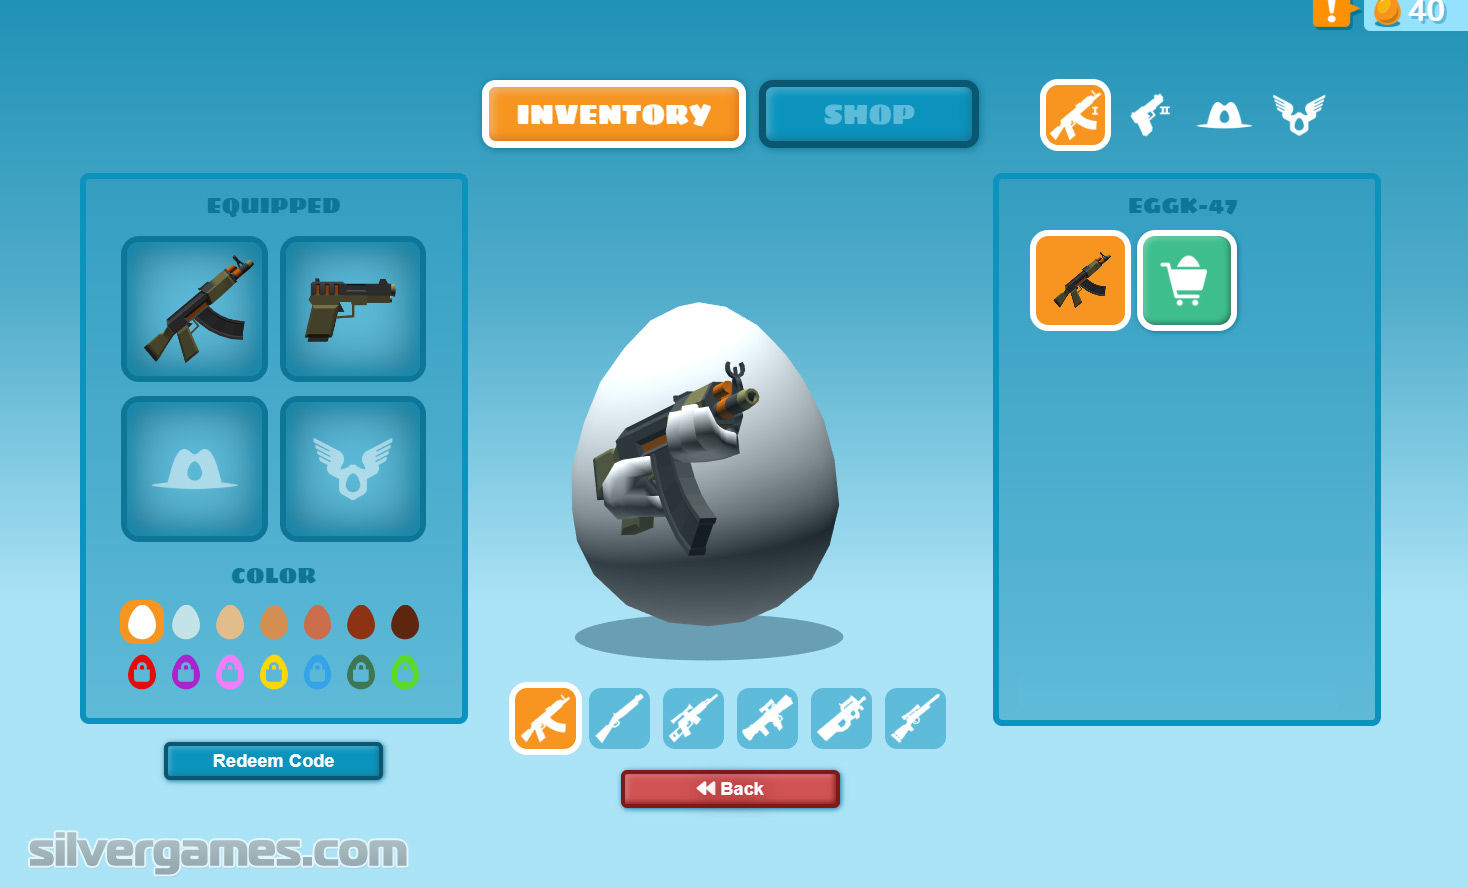 Shellshockers - Jogo do Ovo em Jogos na Internet